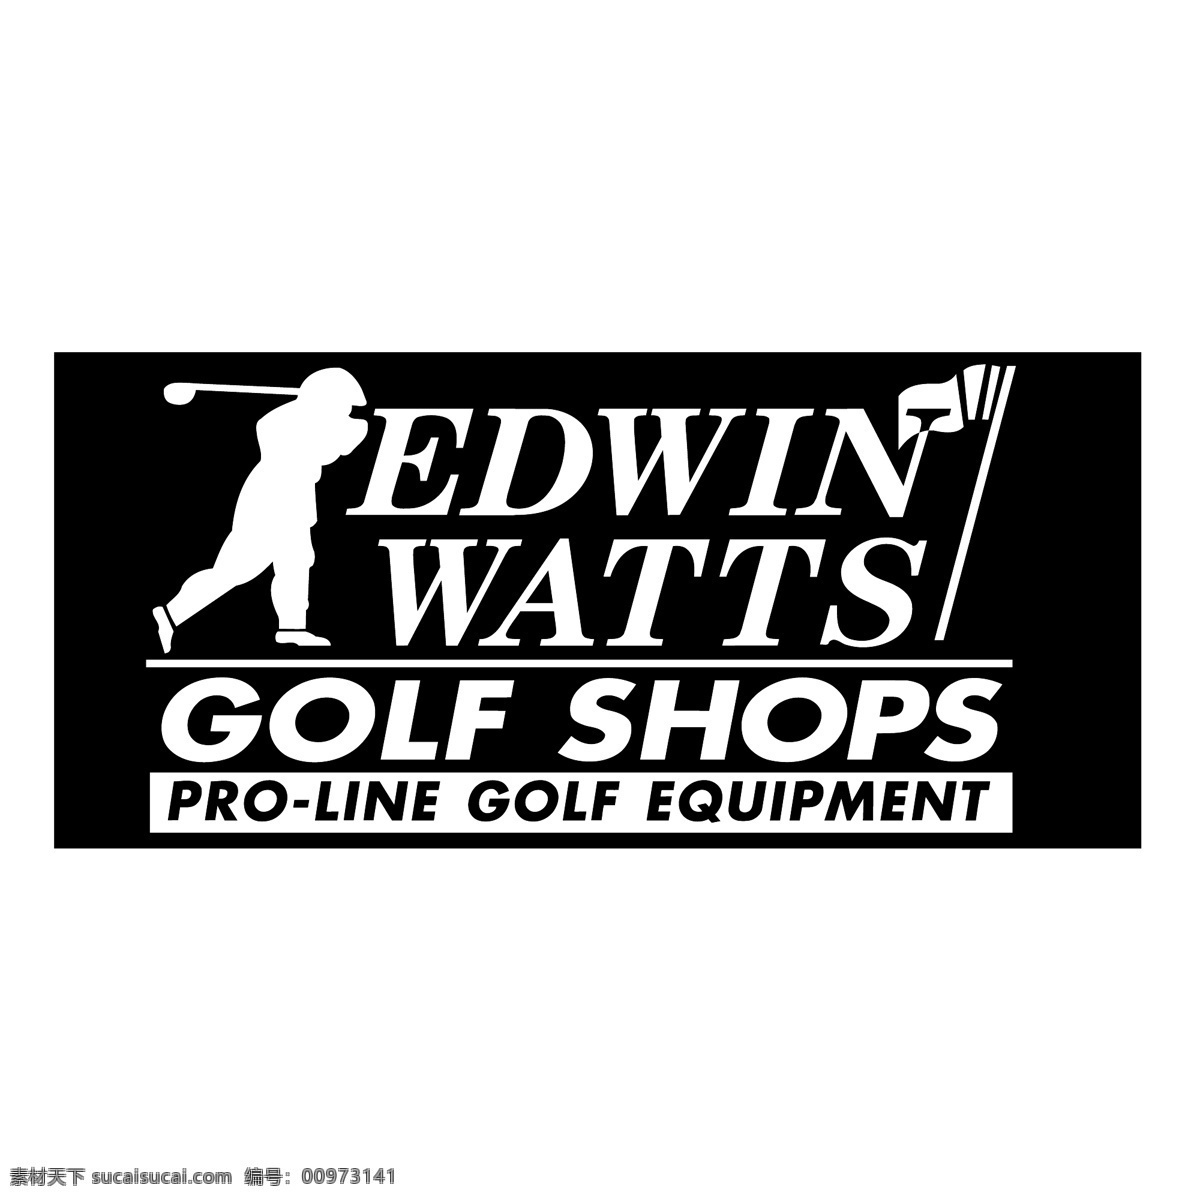 埃德温 沃兹 高尔夫 商店 自由 标志 psd源文件 logo设计